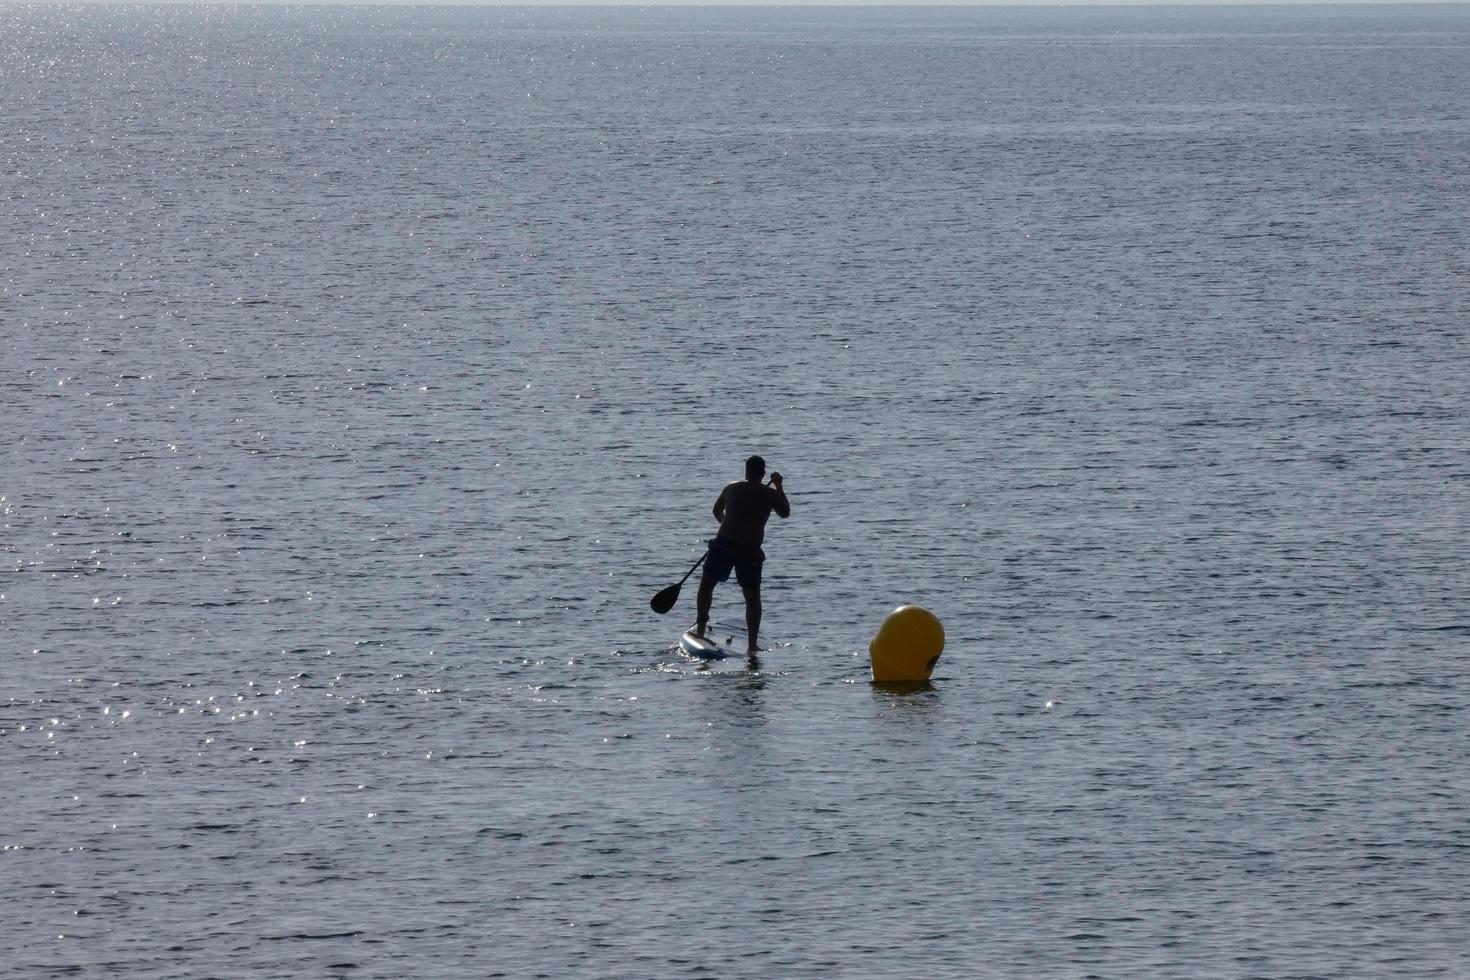 zwemmer Aan vakantie peddelen surfing in de middellandse Zee zee foto